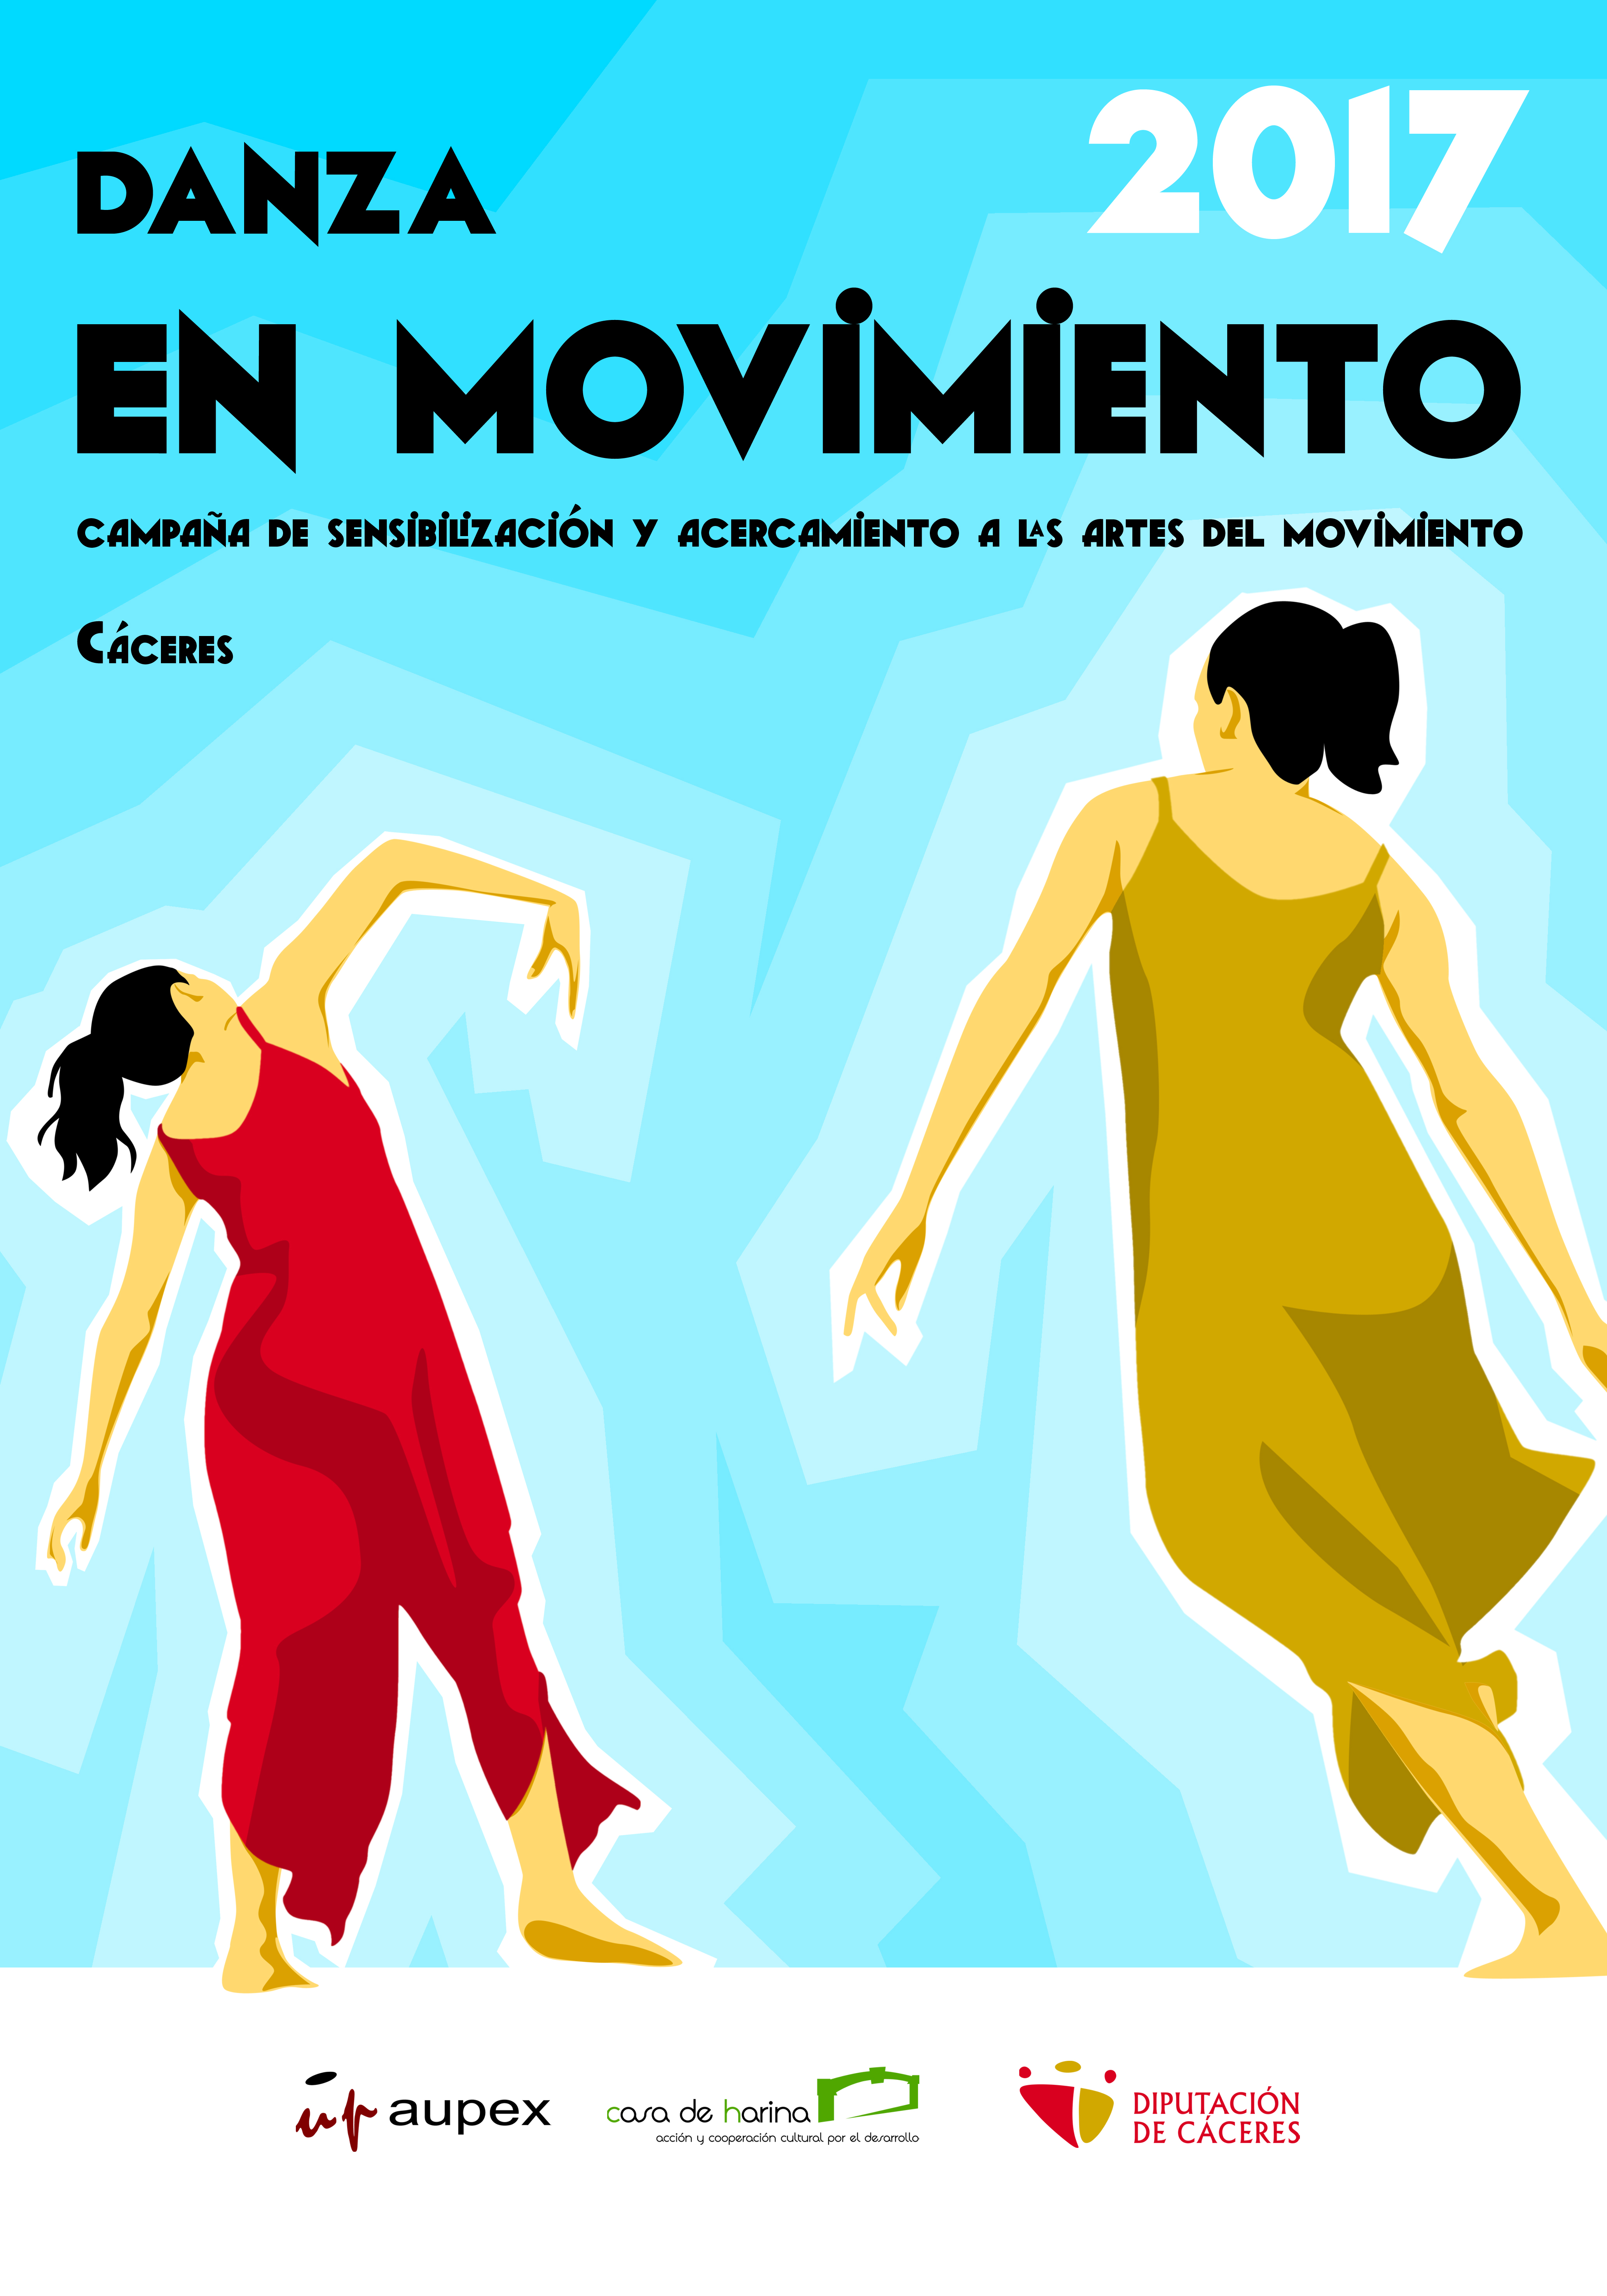 La campaña Danza en movimiento 2017 comienza en Sierra de Fuentes y Torremocha